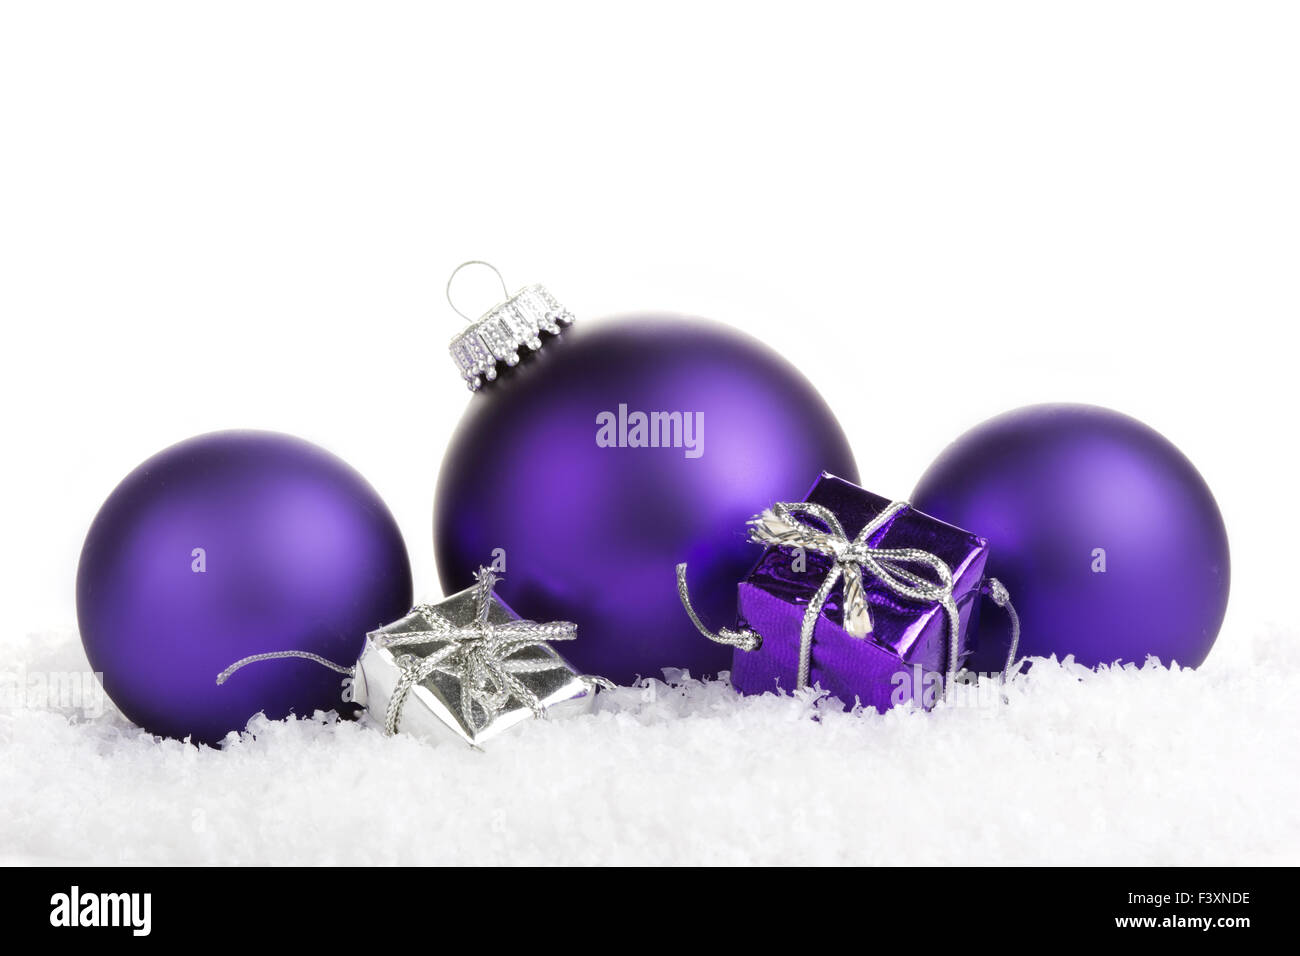 Bolas de Navidad morado con regalos Foto de stock